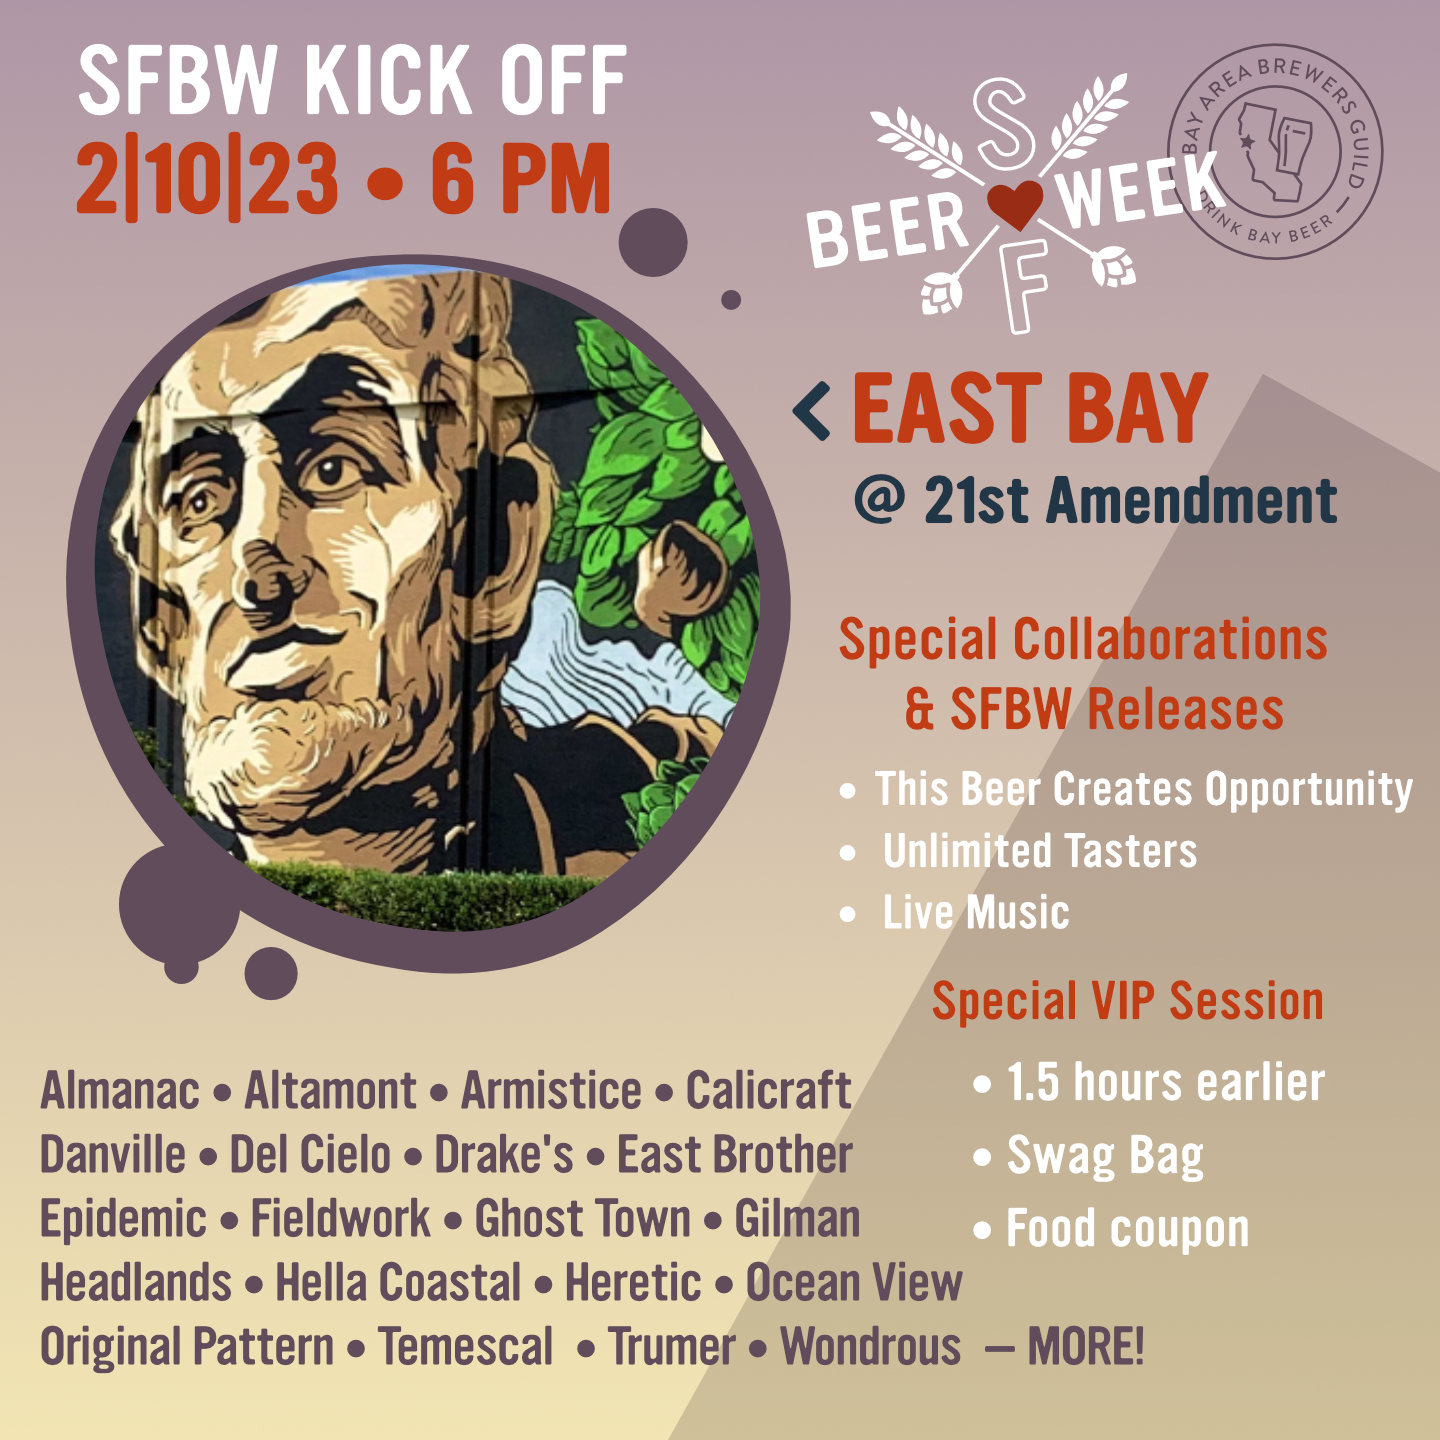 East Bay Kick Off at 21st Amendment